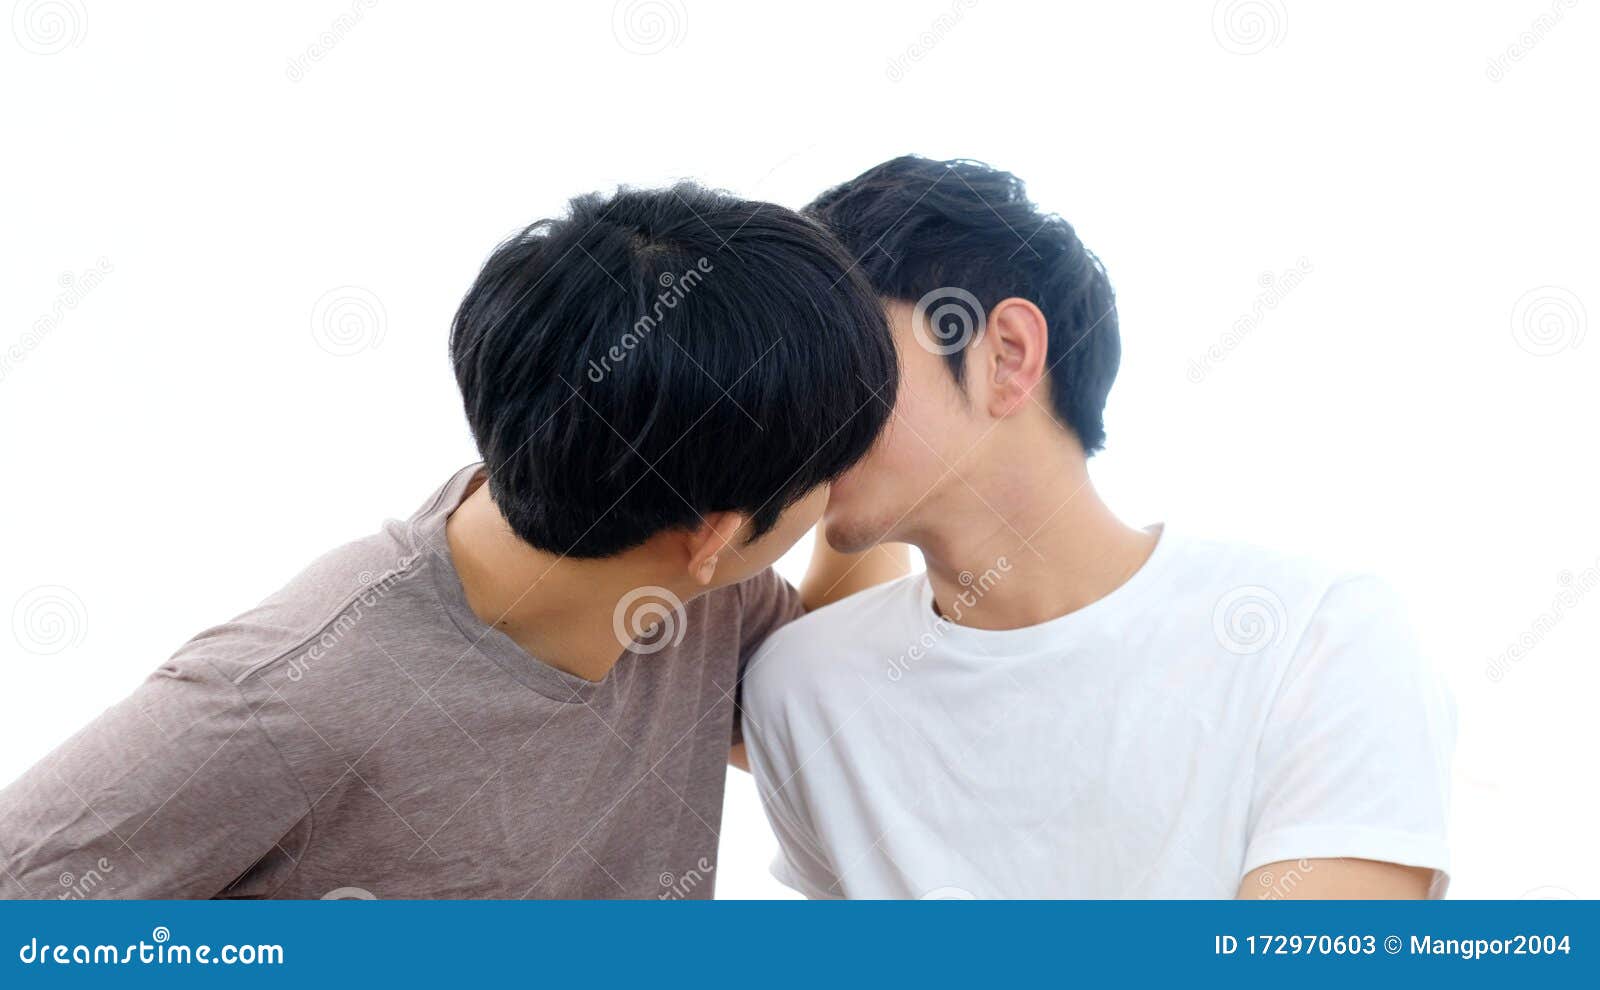 年轻而帅气的亚洲男性同性恋、双性恋和变性者 库存照片. 图片 包括有 权利, 愉快, 系列, 和平, 家庭 - 213506472